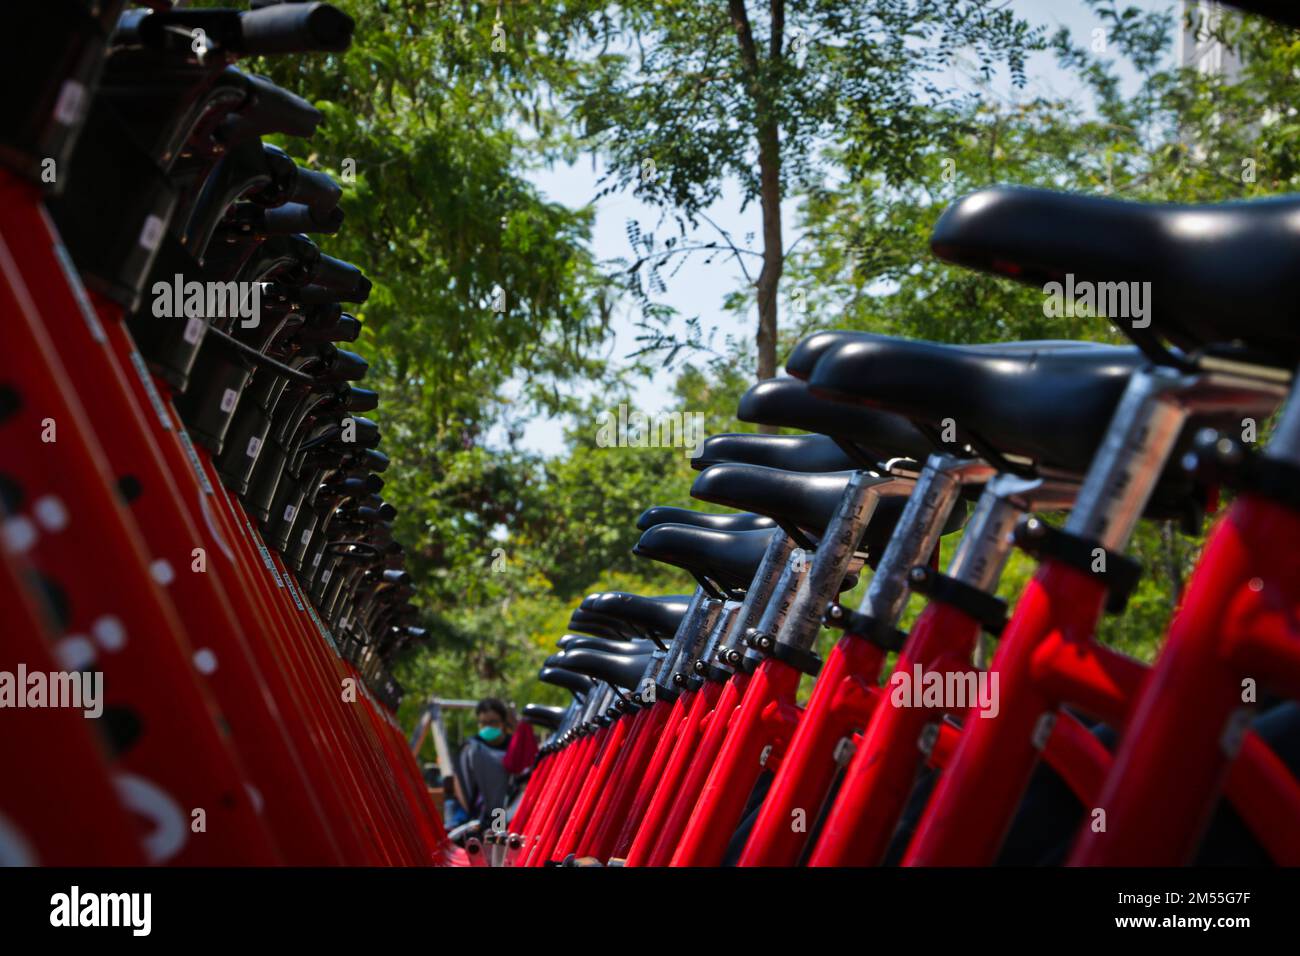 Ein kleiner Winkel von einer Reihe roter Fahrräder mit schwarzen Sitzen, die auf einem Regal geparkt sind Stockfoto